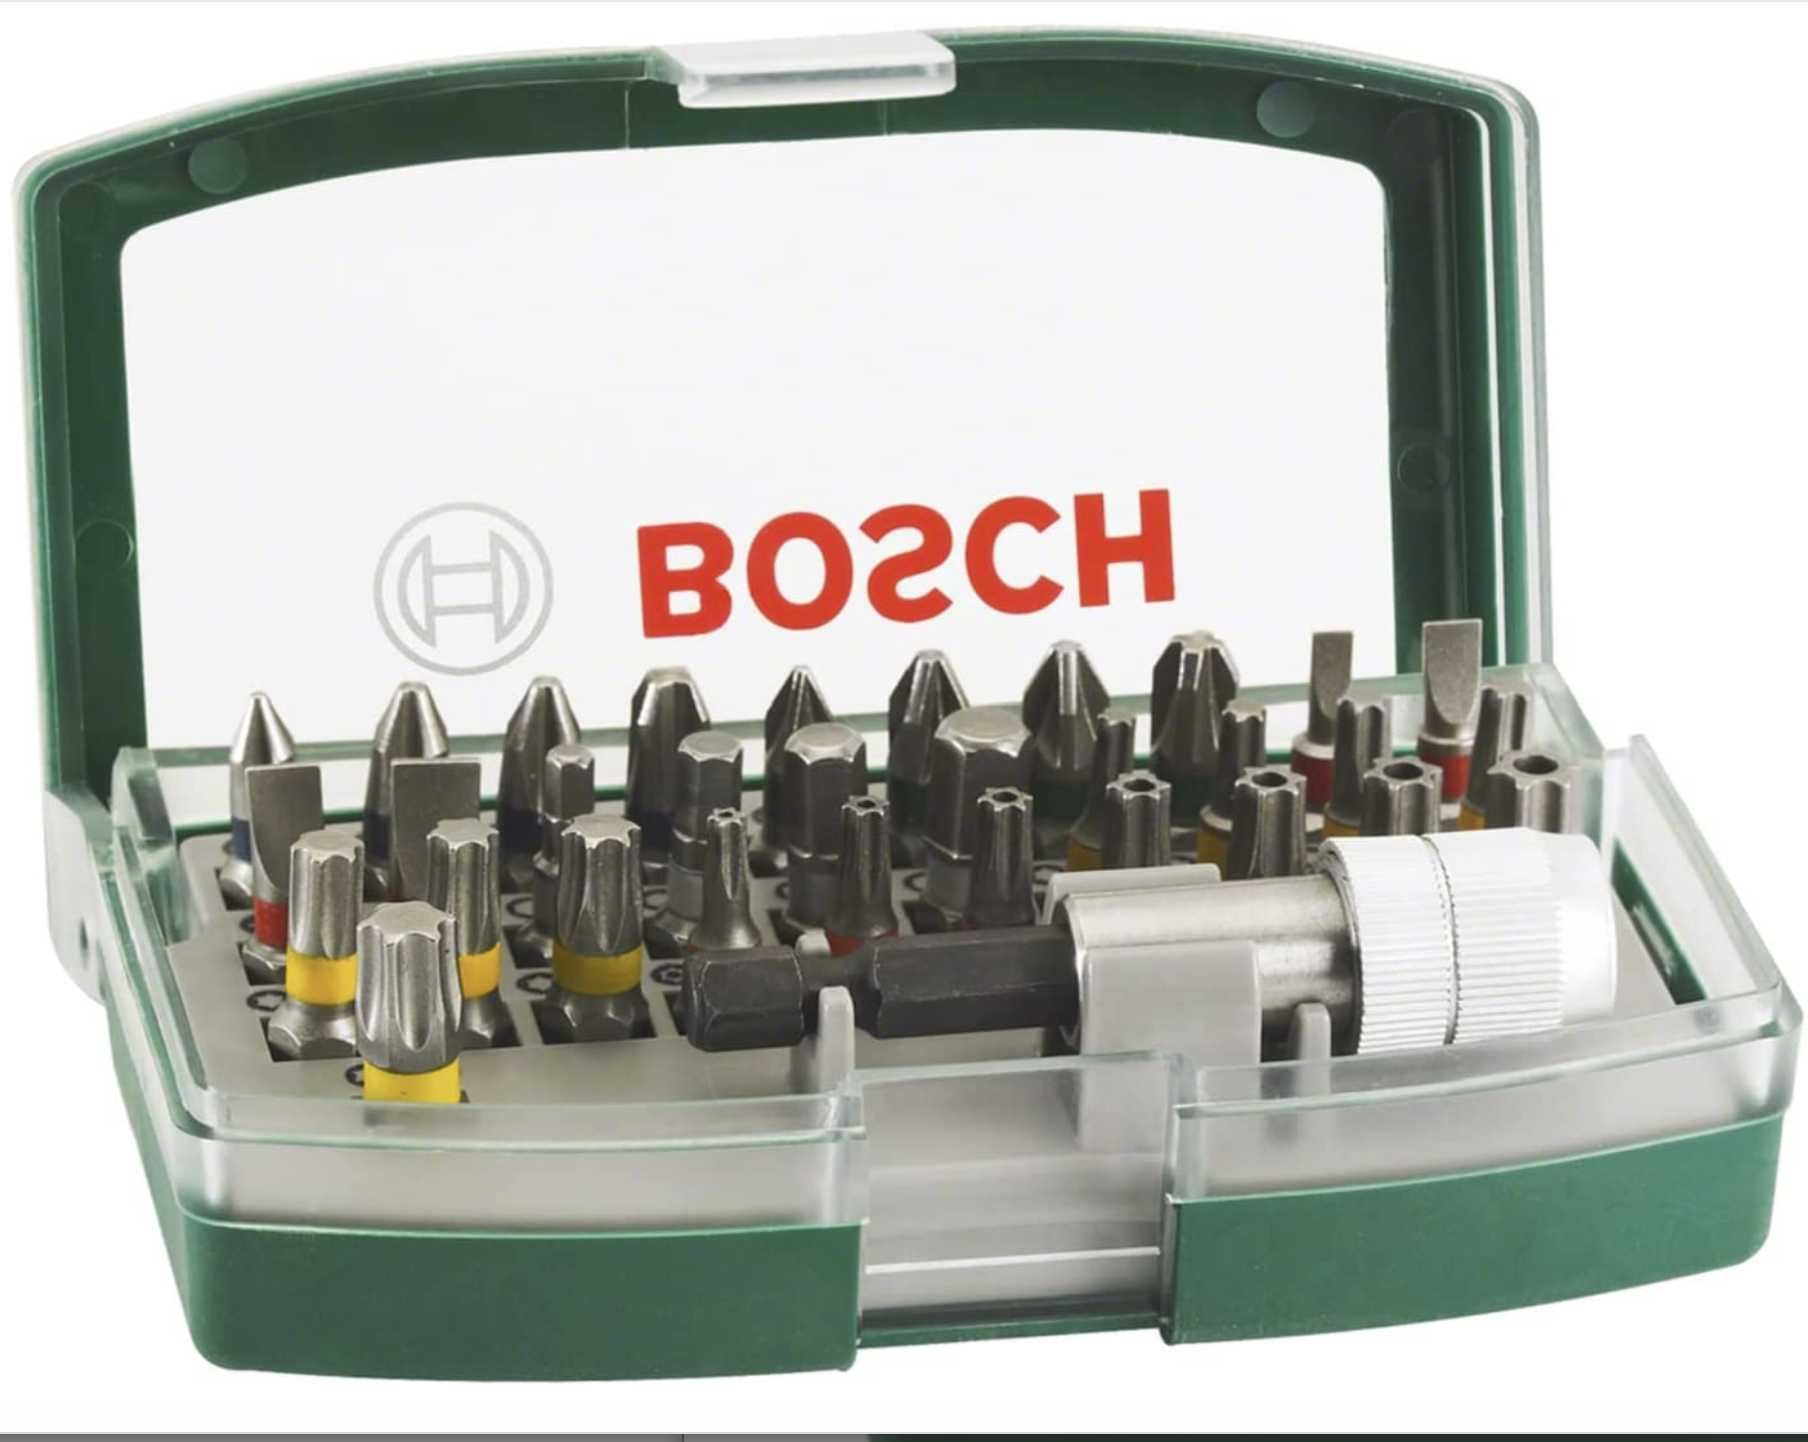 Bosch Schrauberbit-Set 32-teilig (2607017063) mit Farbcodierung in Kunststoffbox